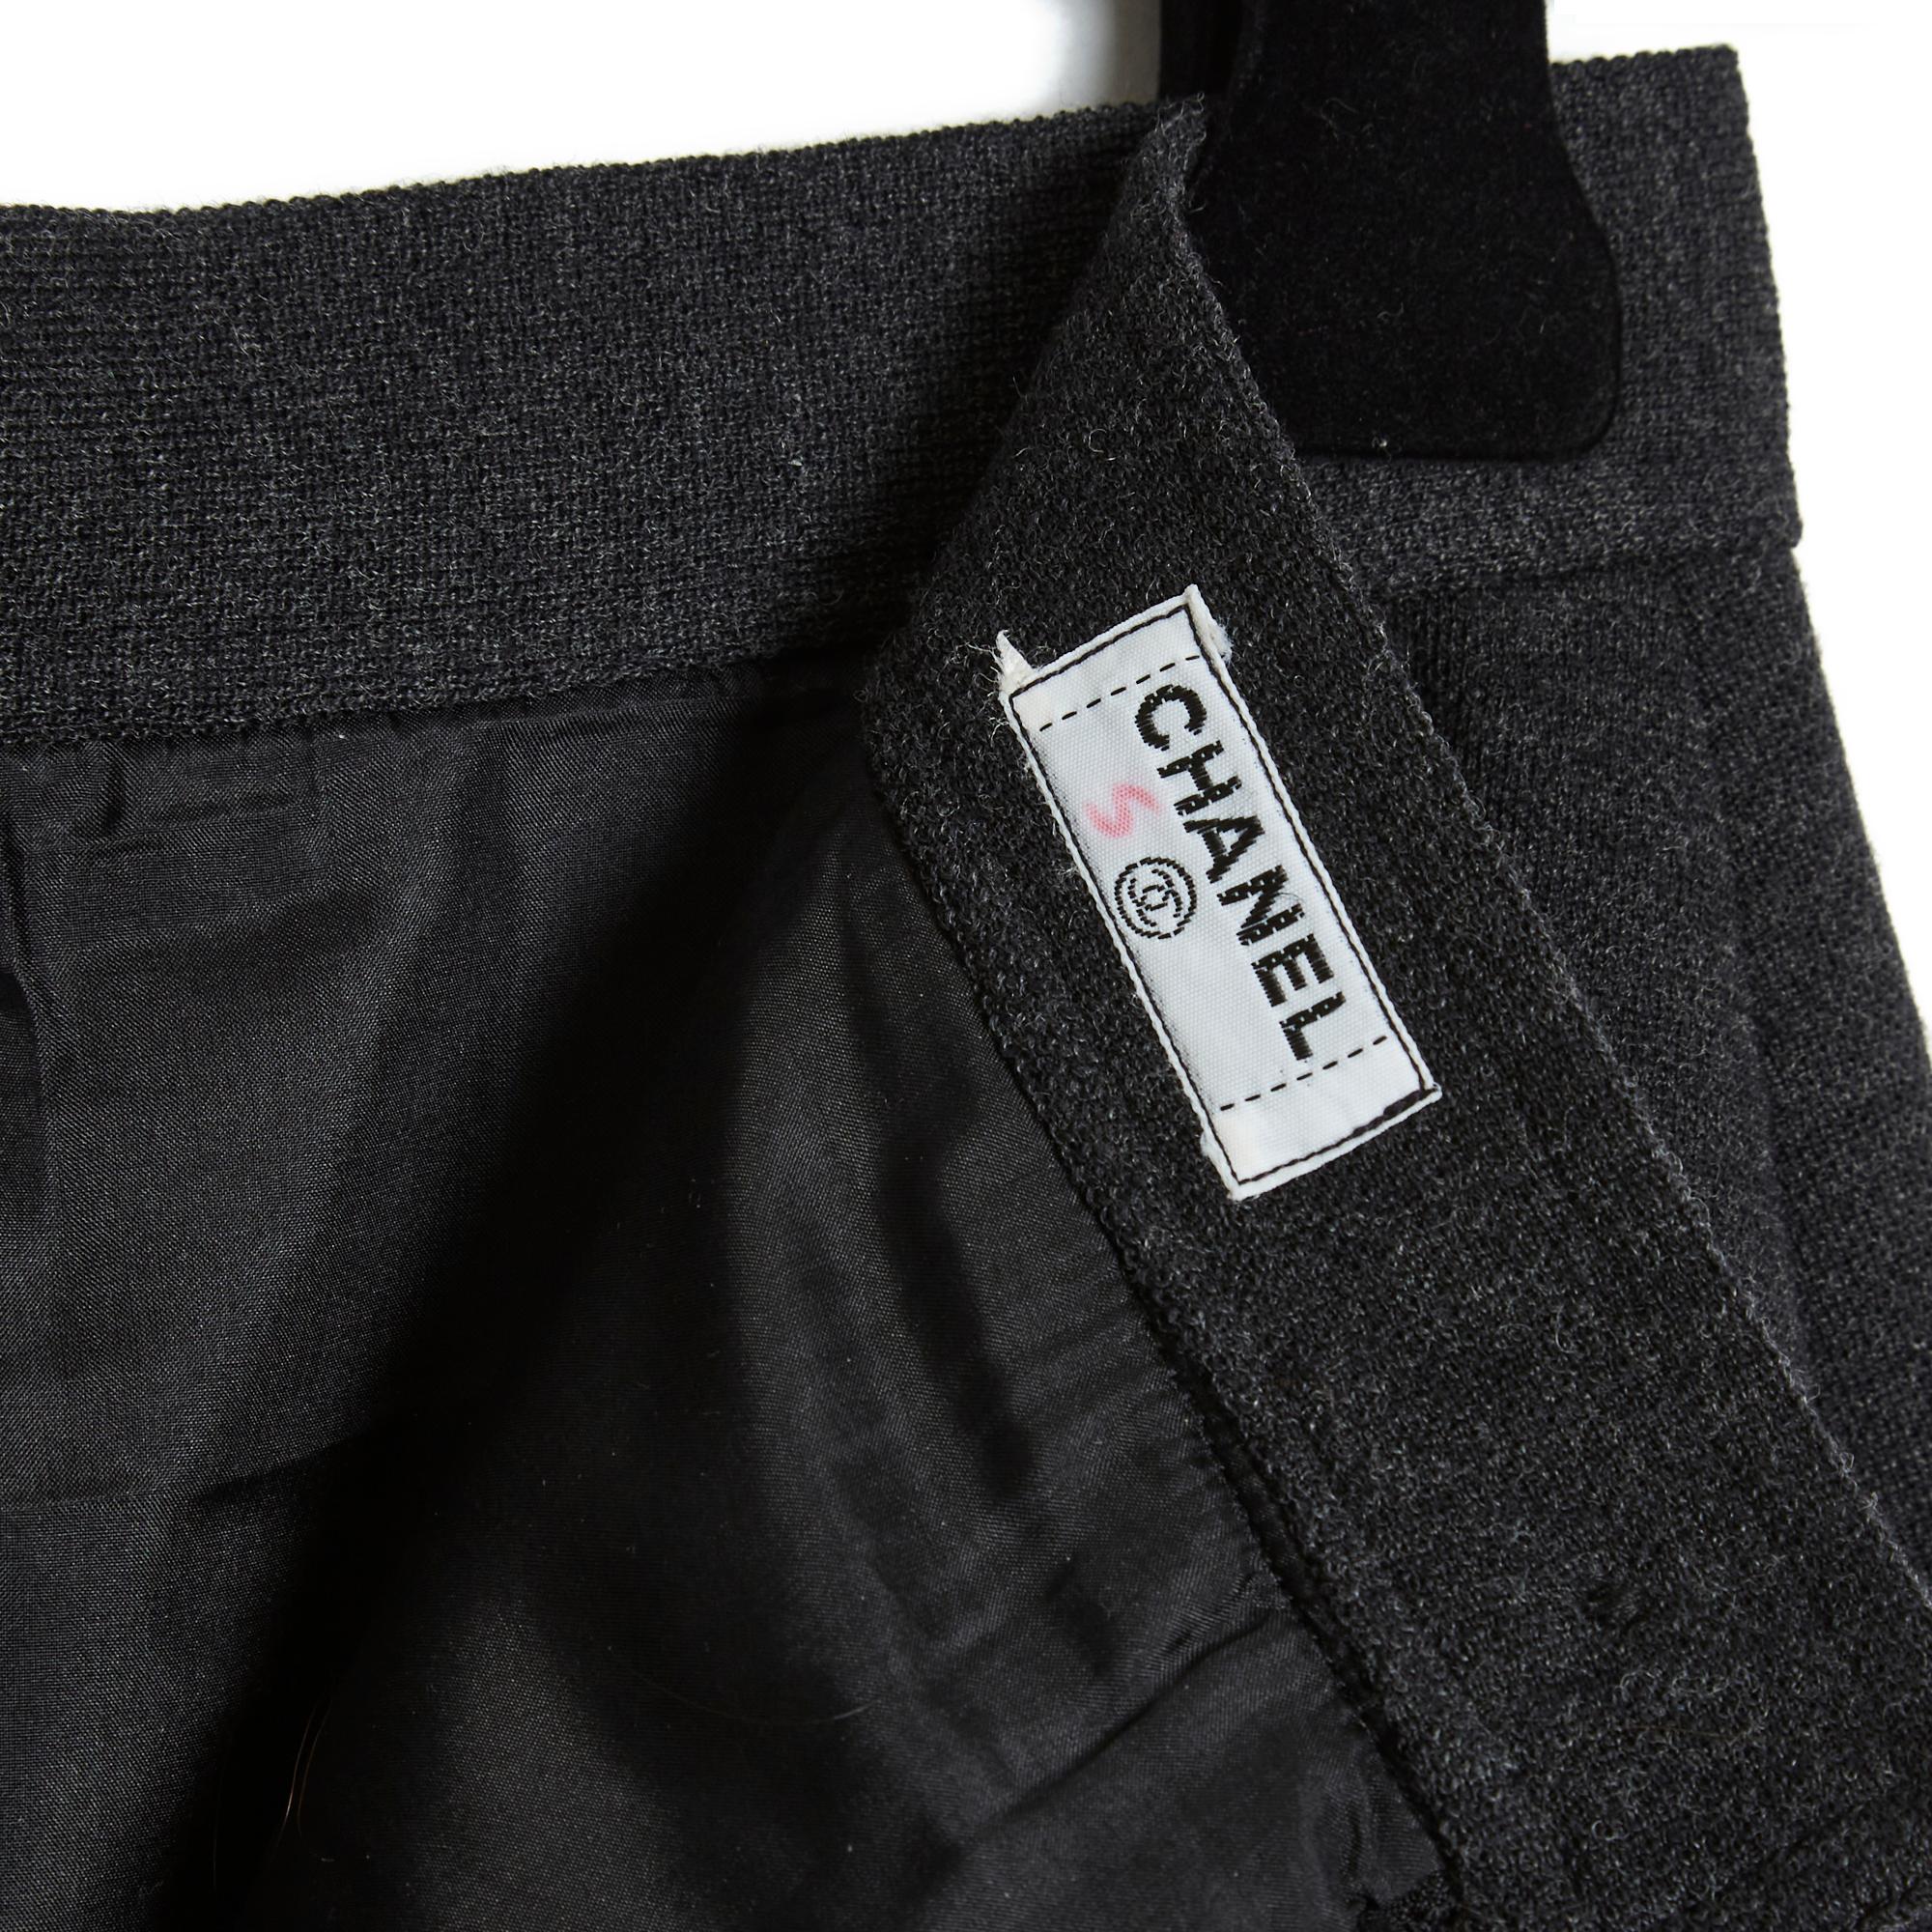 Chanel circa 1995 jupe droite en jersey de laine épais gris anthracite, fermée par un zip et un bouton au dos, doublée de soie assortie. Plus de Label de taille mais les mesures indiquent un 36FR : taille 35 cm, longueur 63,5 cm. La jupe est en très